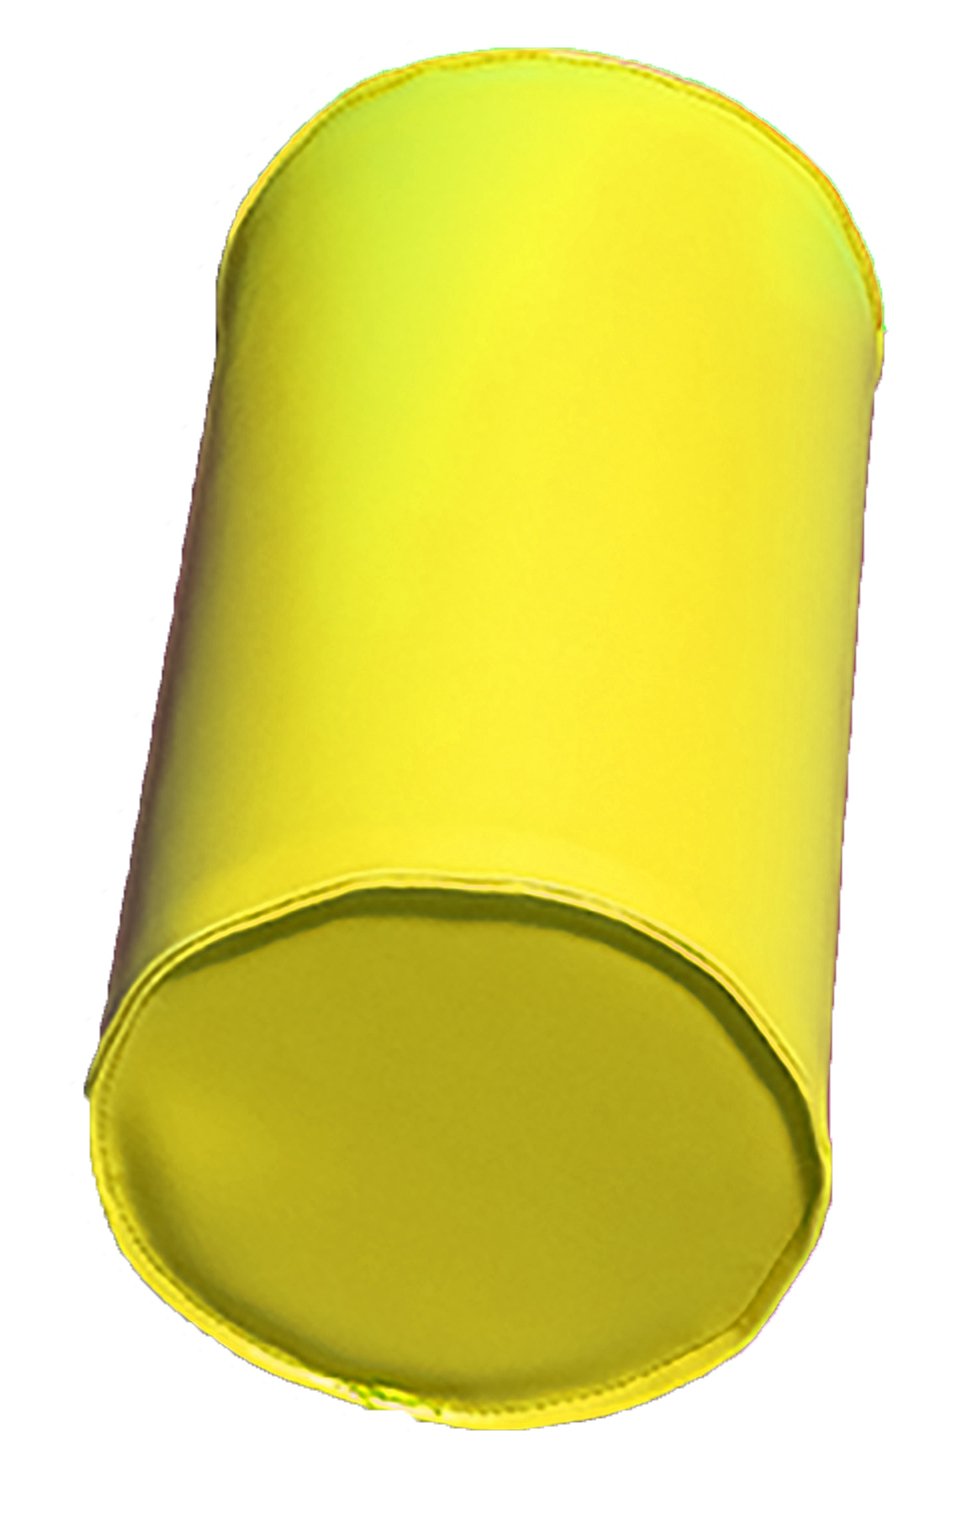 Module cylindre en mousse diam 25cm jaune